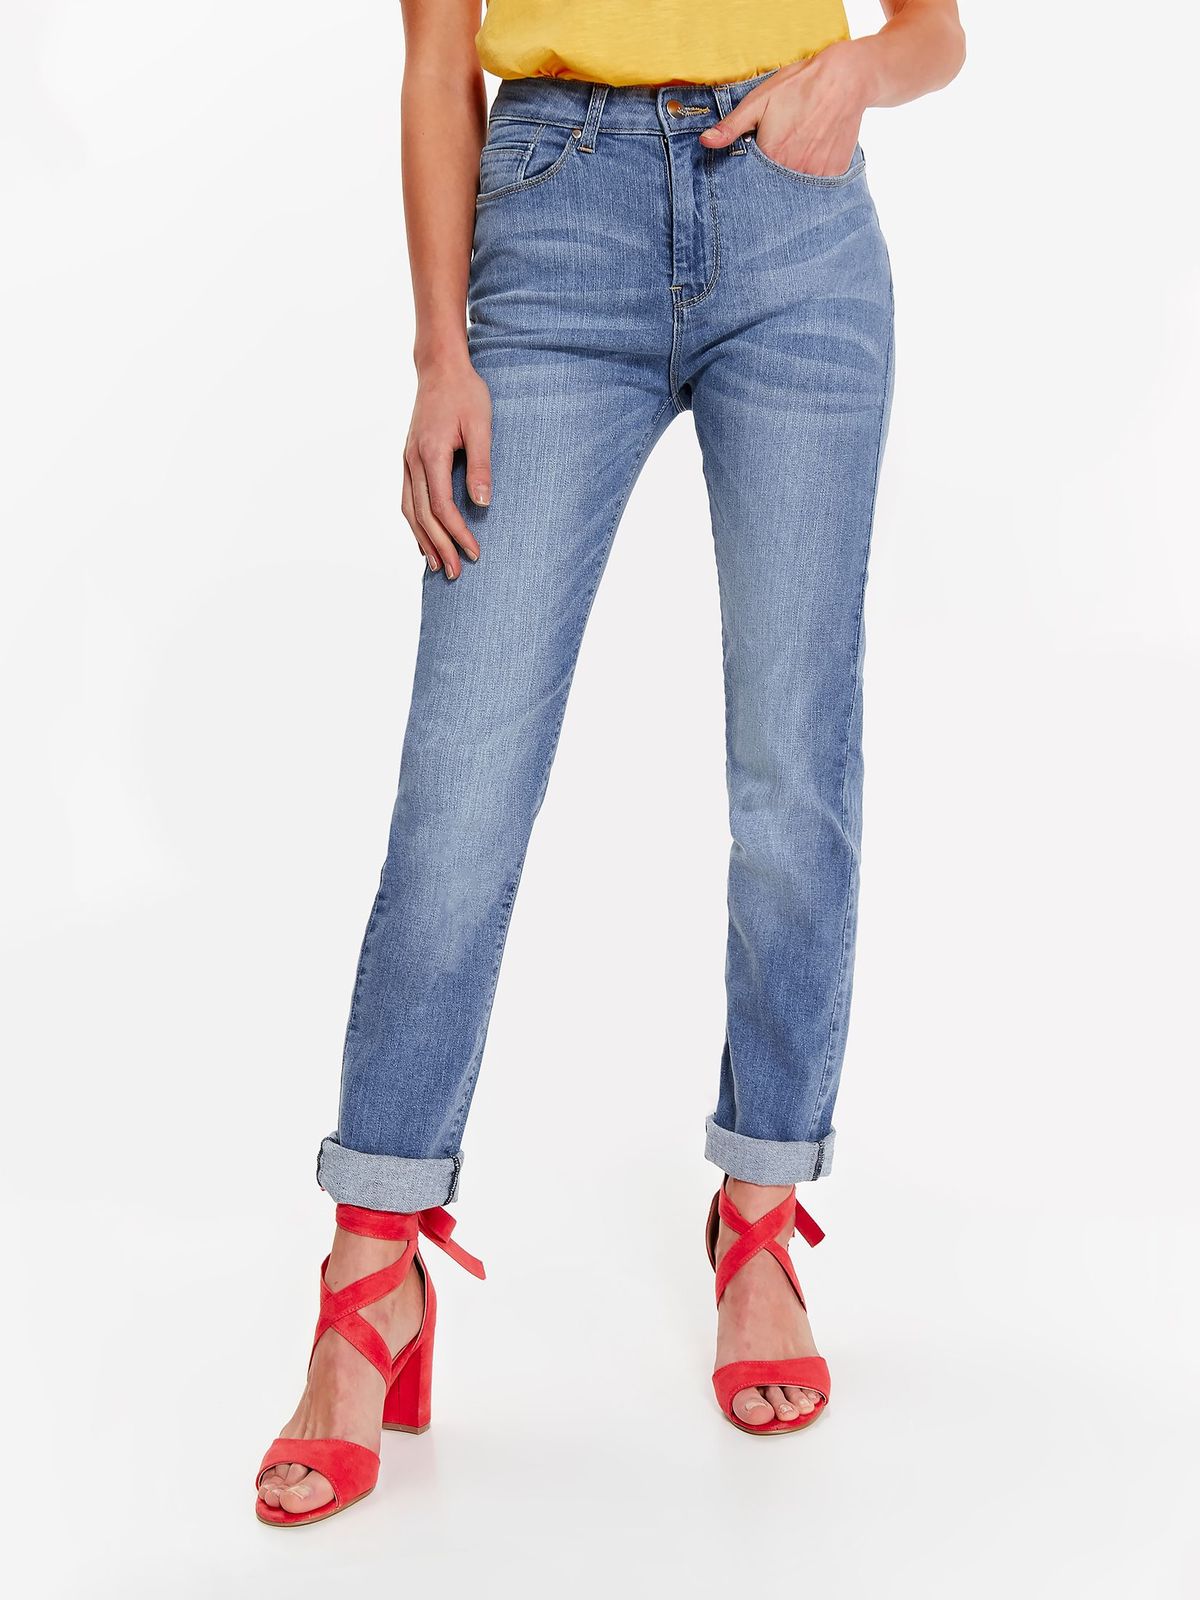 Вайлдберриз джинсы женские летние. Весенние джинсы женские. Top Secret джинсы.